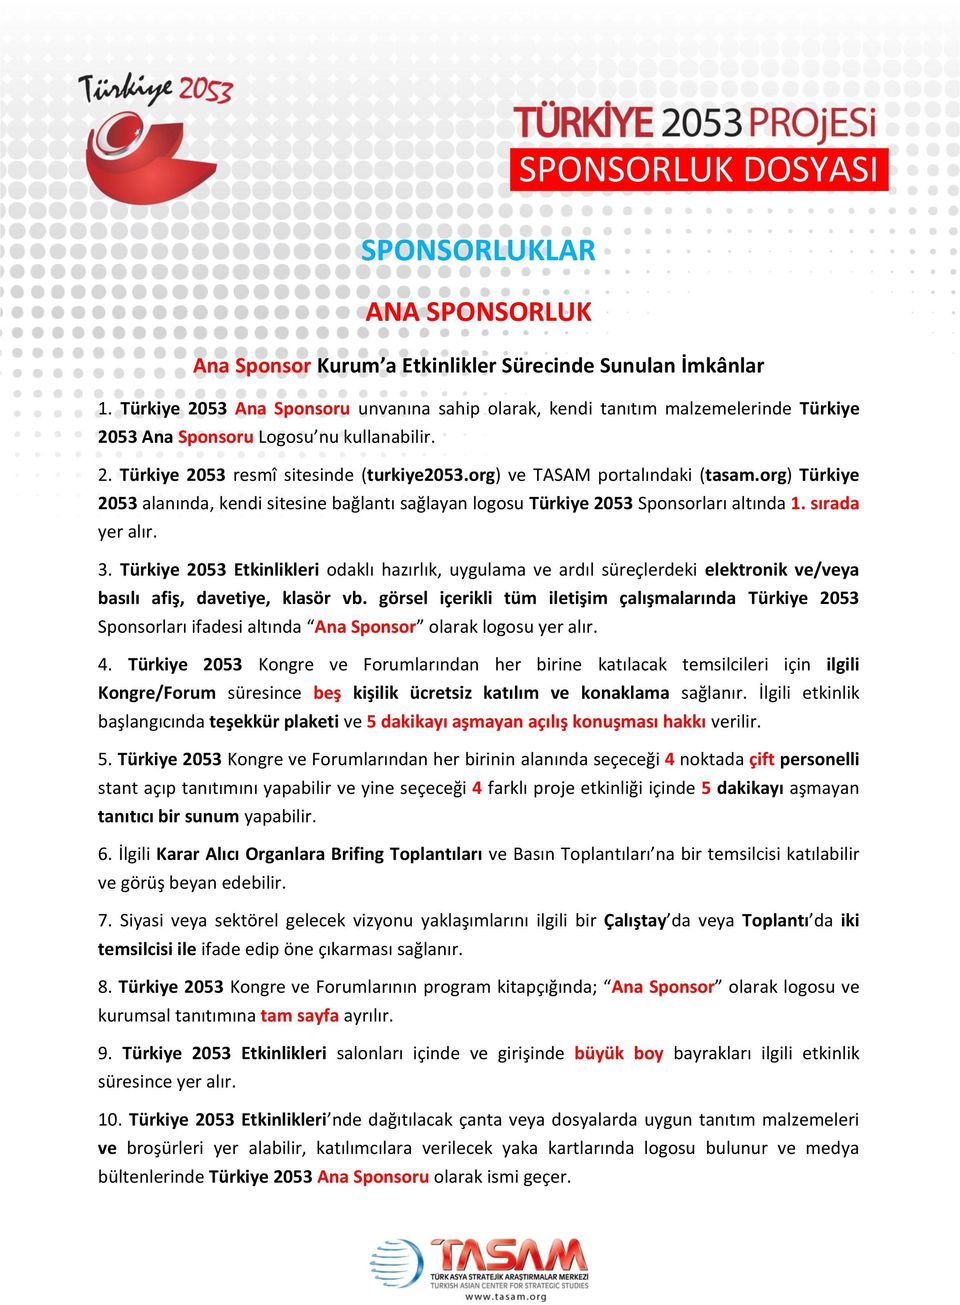 org) ve TASAM portalındaki (tasam.org) Türkiye 2053 alanında, kendi sitesine bağlantı sağlayan logosu Türkiye 2053 Sponsorları altında 1. sırada 3.